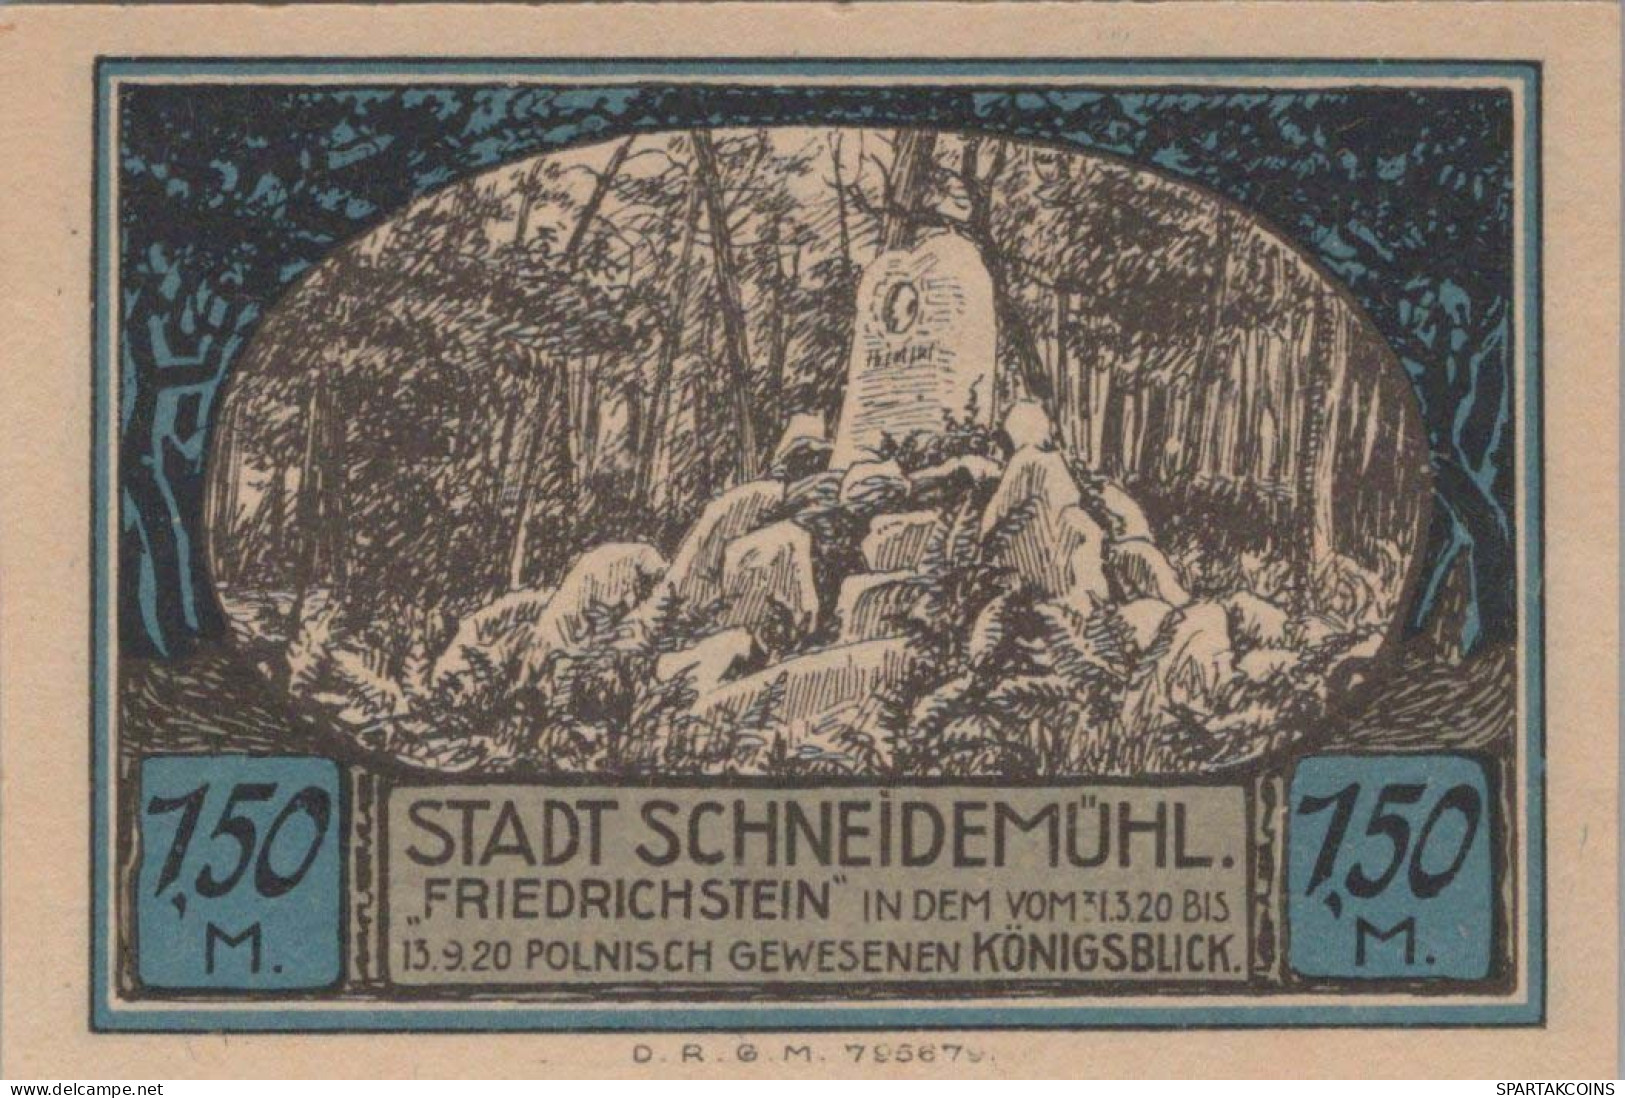 1.5 MARK 1914-1924 Stadt SCHNEIDEMÜHL Posen UNC DEUTSCHLAND Notgeld #PD308 - [11] Local Banknote Issues